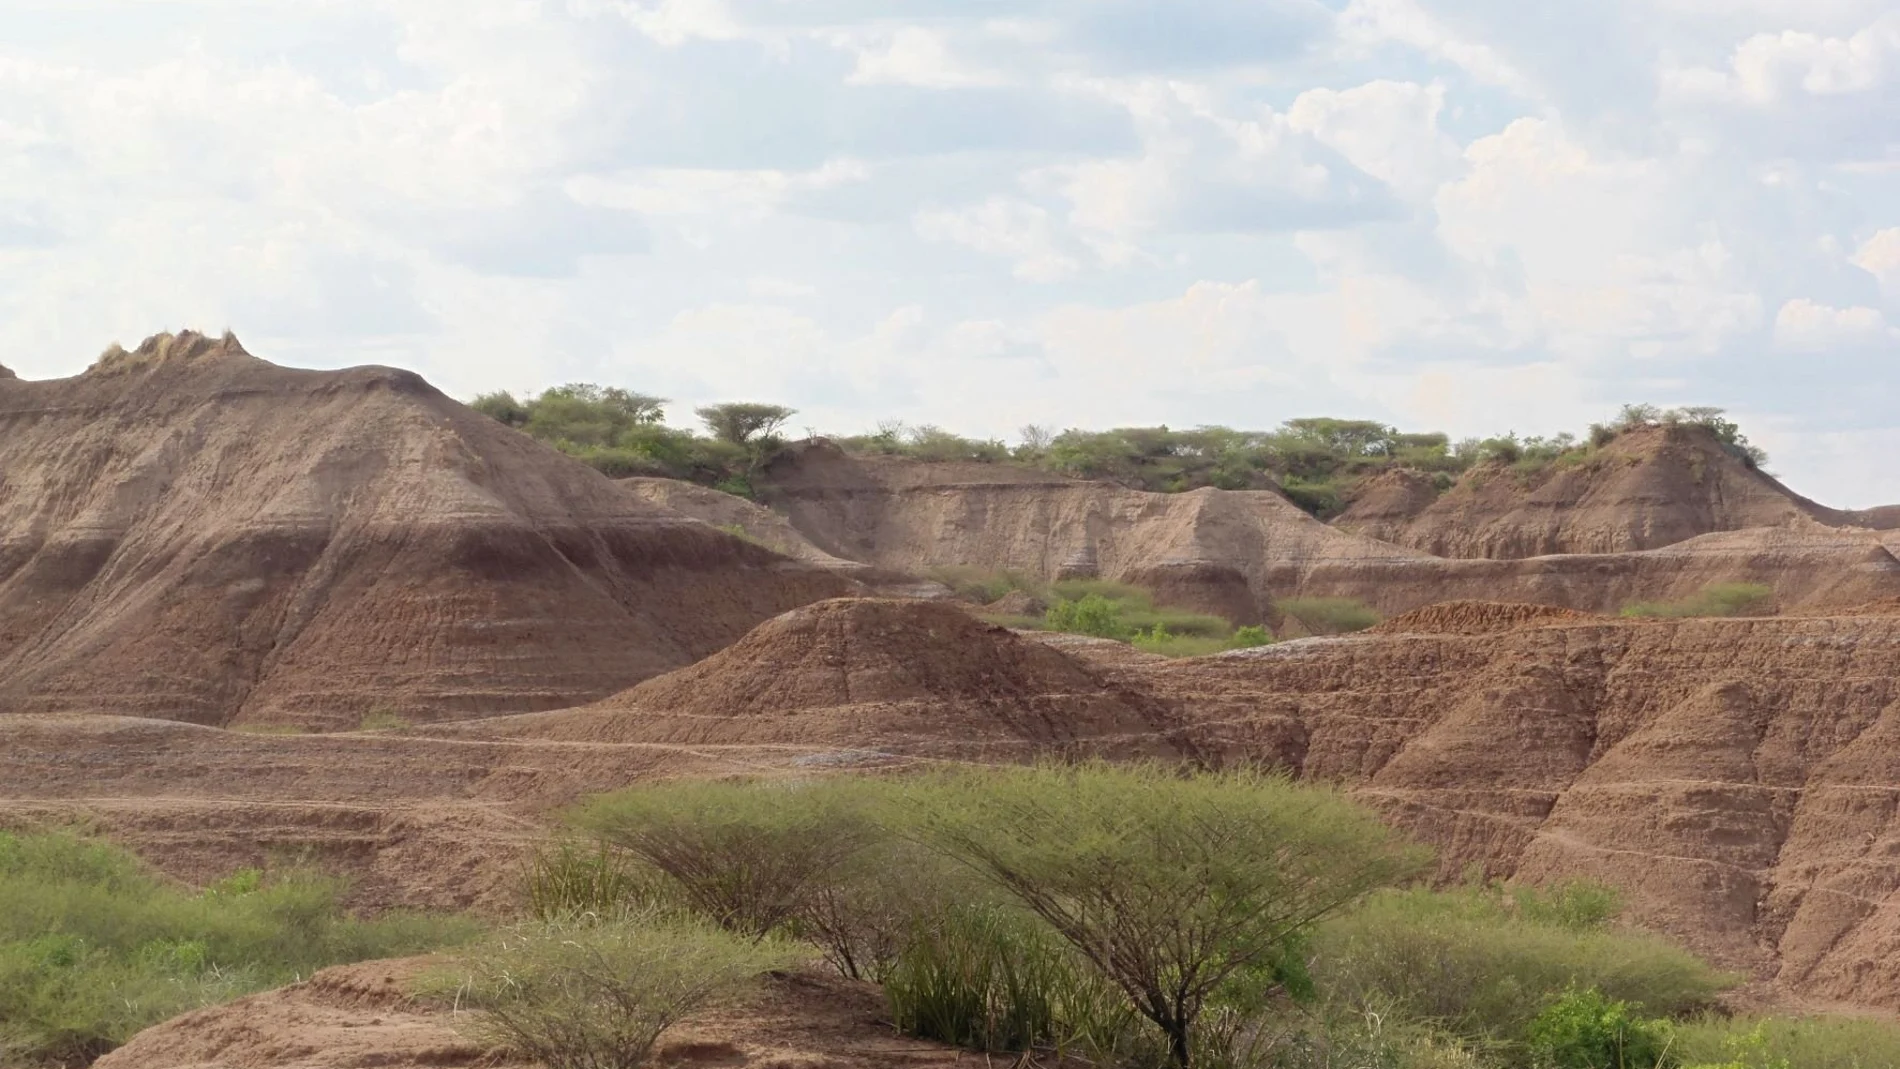 La formación geológica Omo Kibish se ve en el suroeste de Etiopía. Celine Vidal/Handout